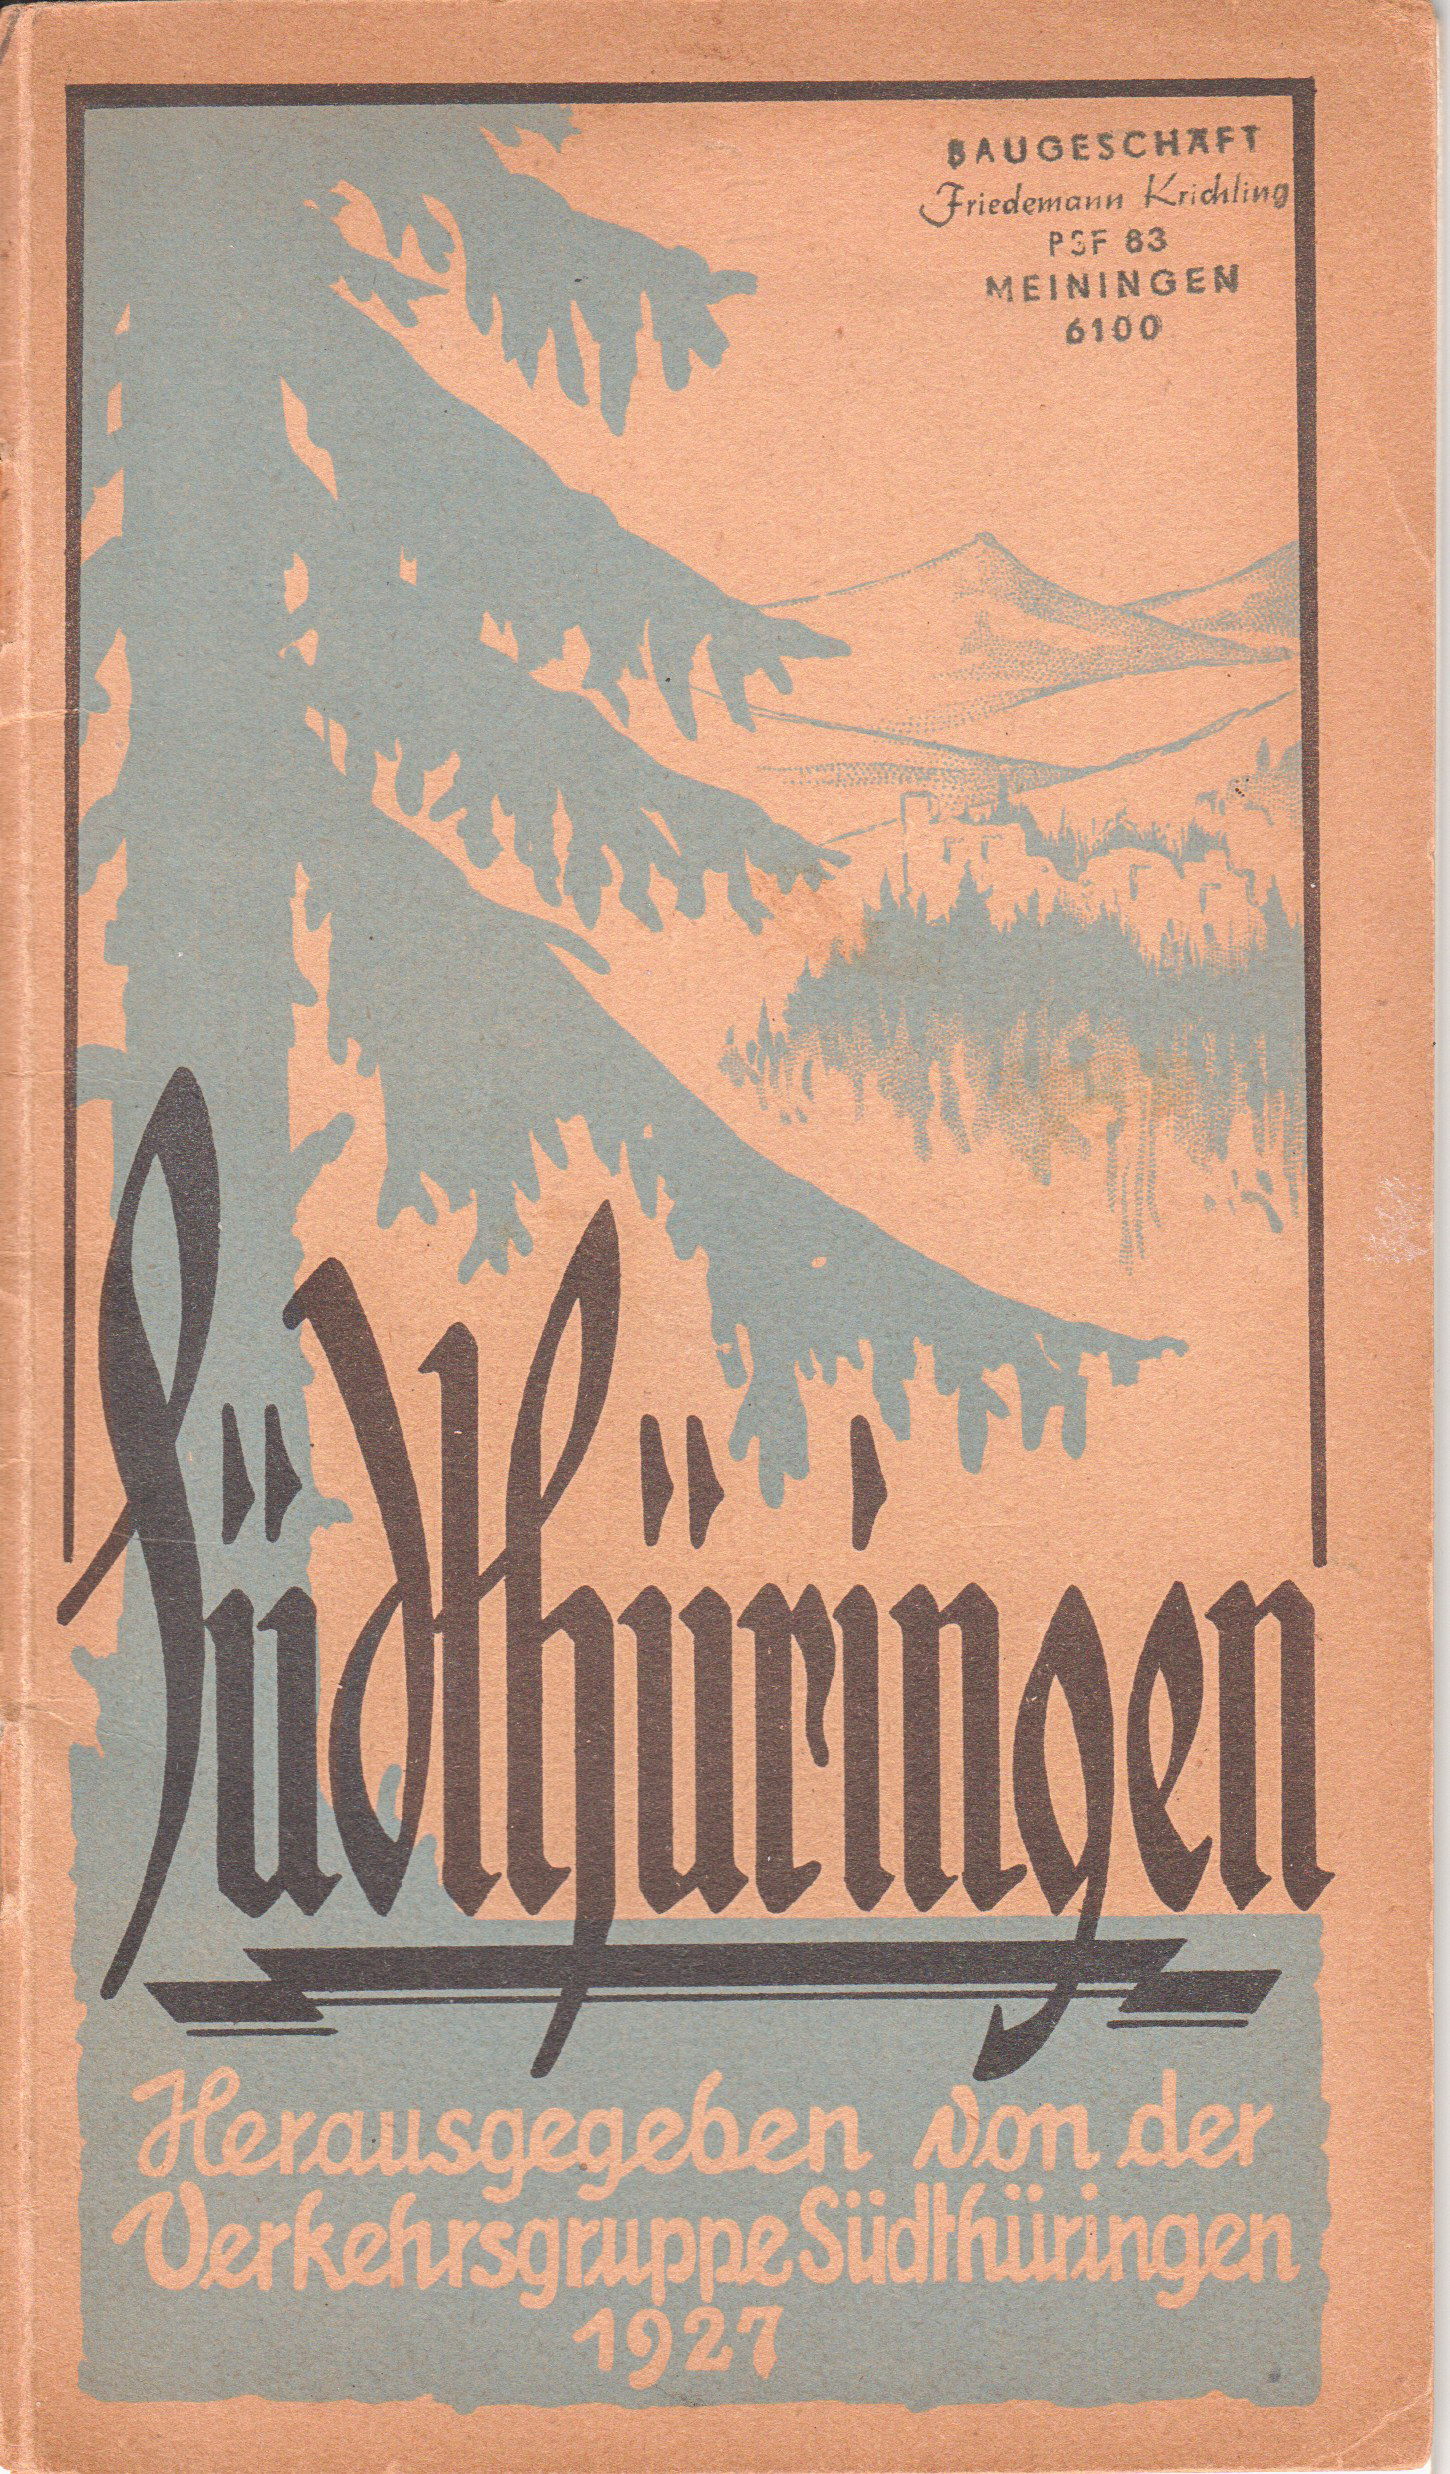 Südthüringen – Herausgegeben von der Verkehrsgruppe Südthüringen 1927